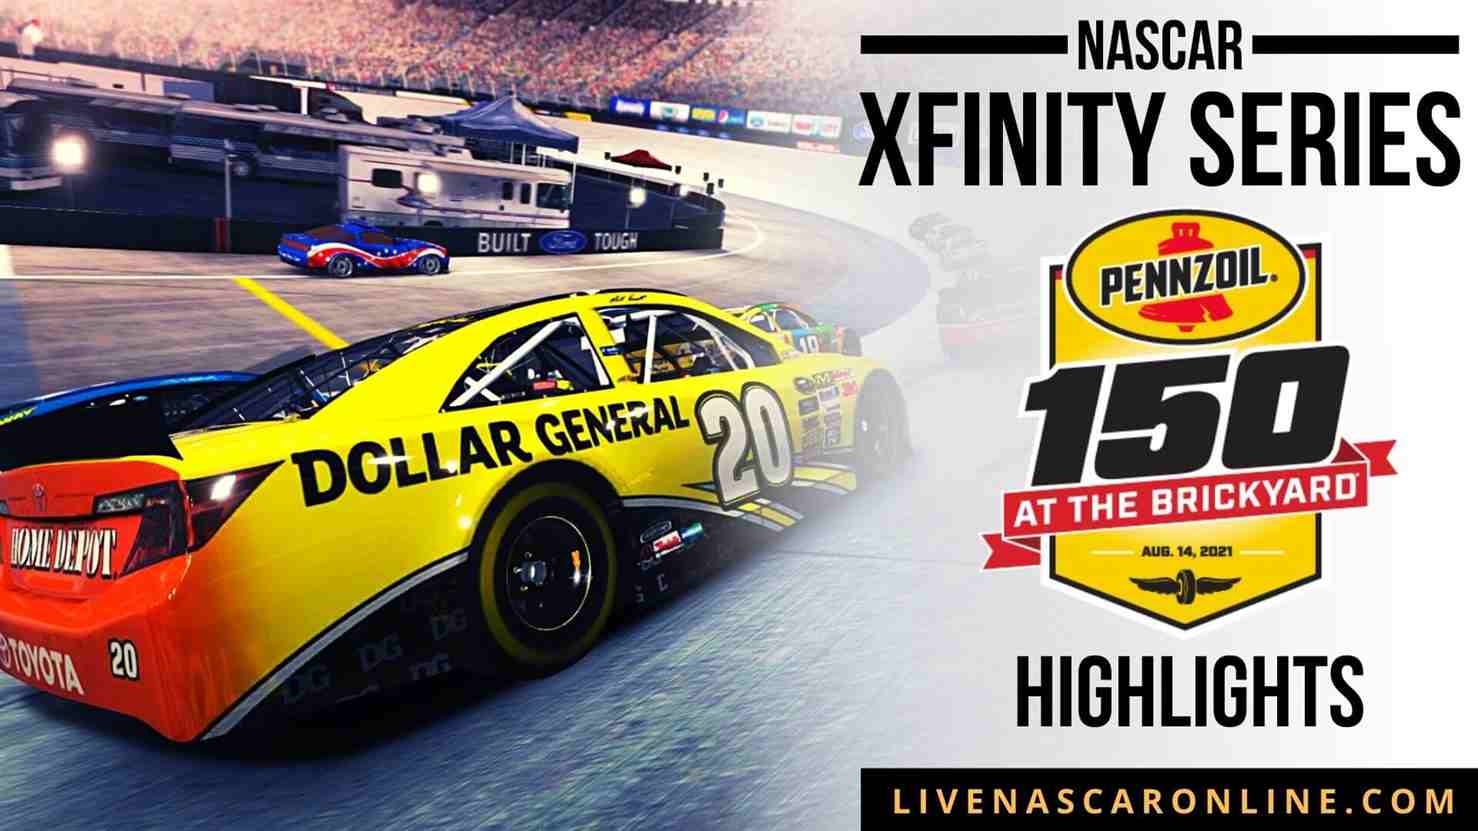 Pennzoil 150 Highlights 2021 Nascar Xfinity Series